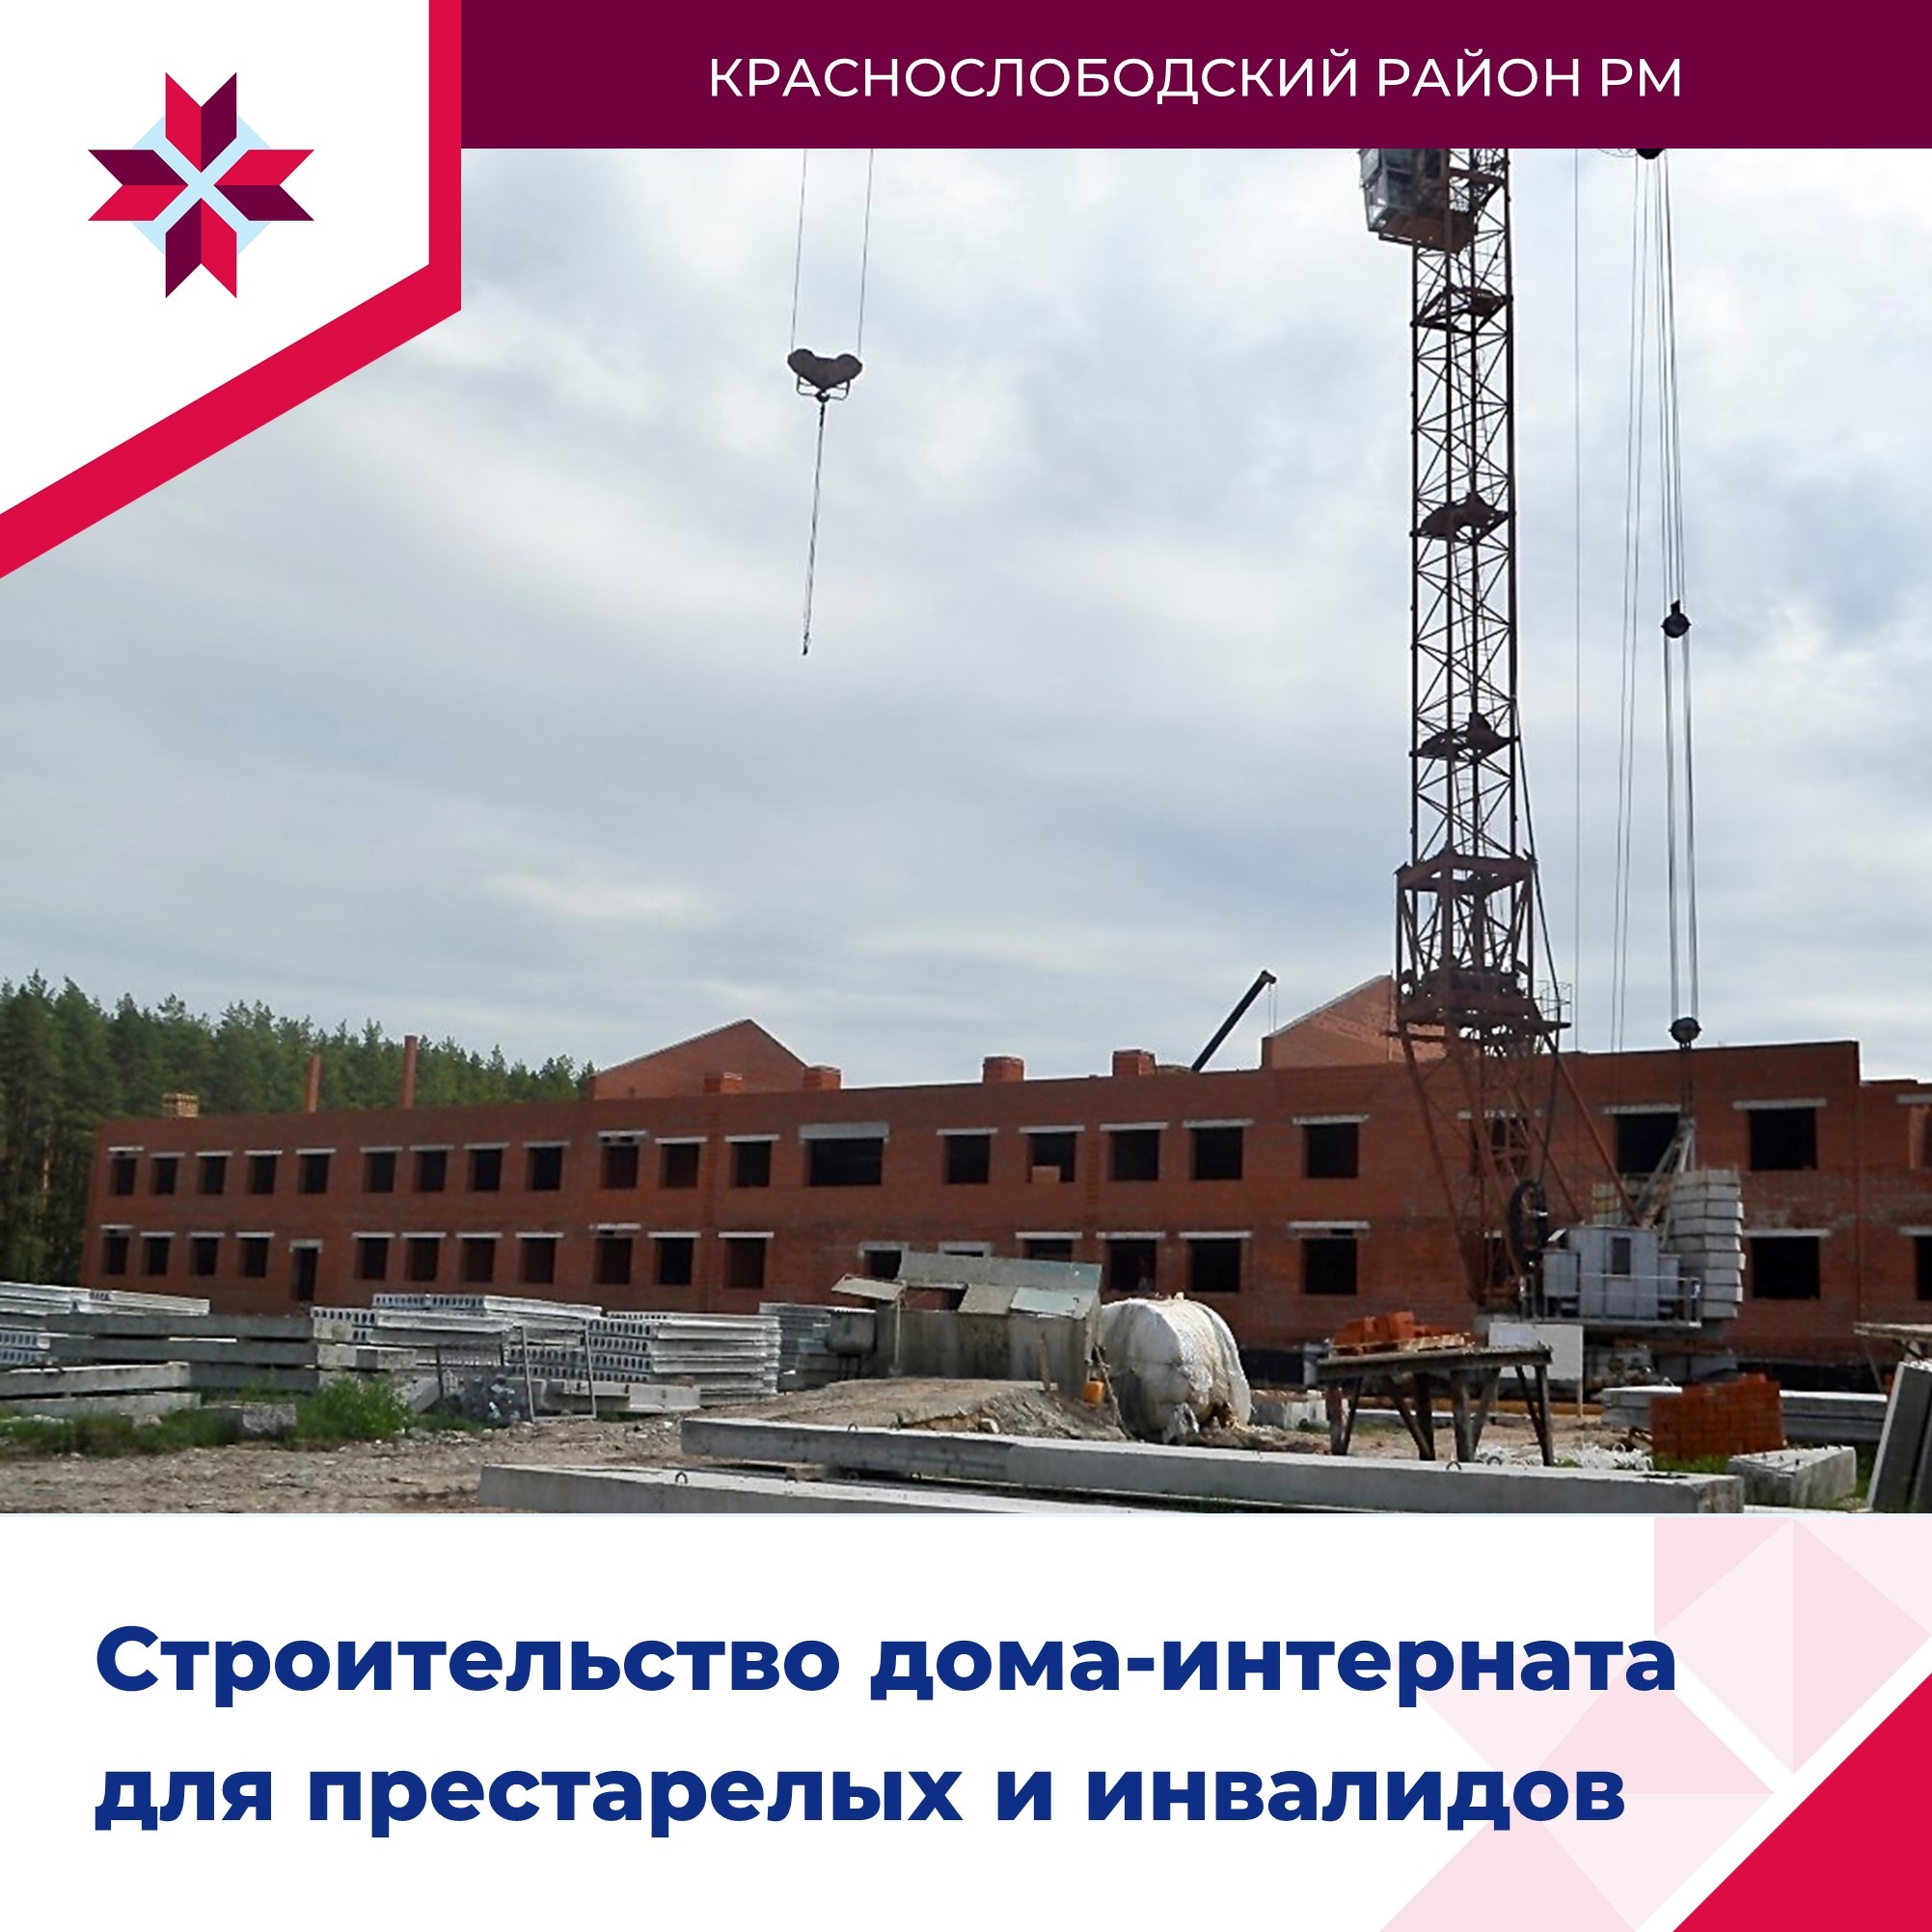 В Краснослободске продолжается строительство дома-интерната для престарелых и инвалидов.